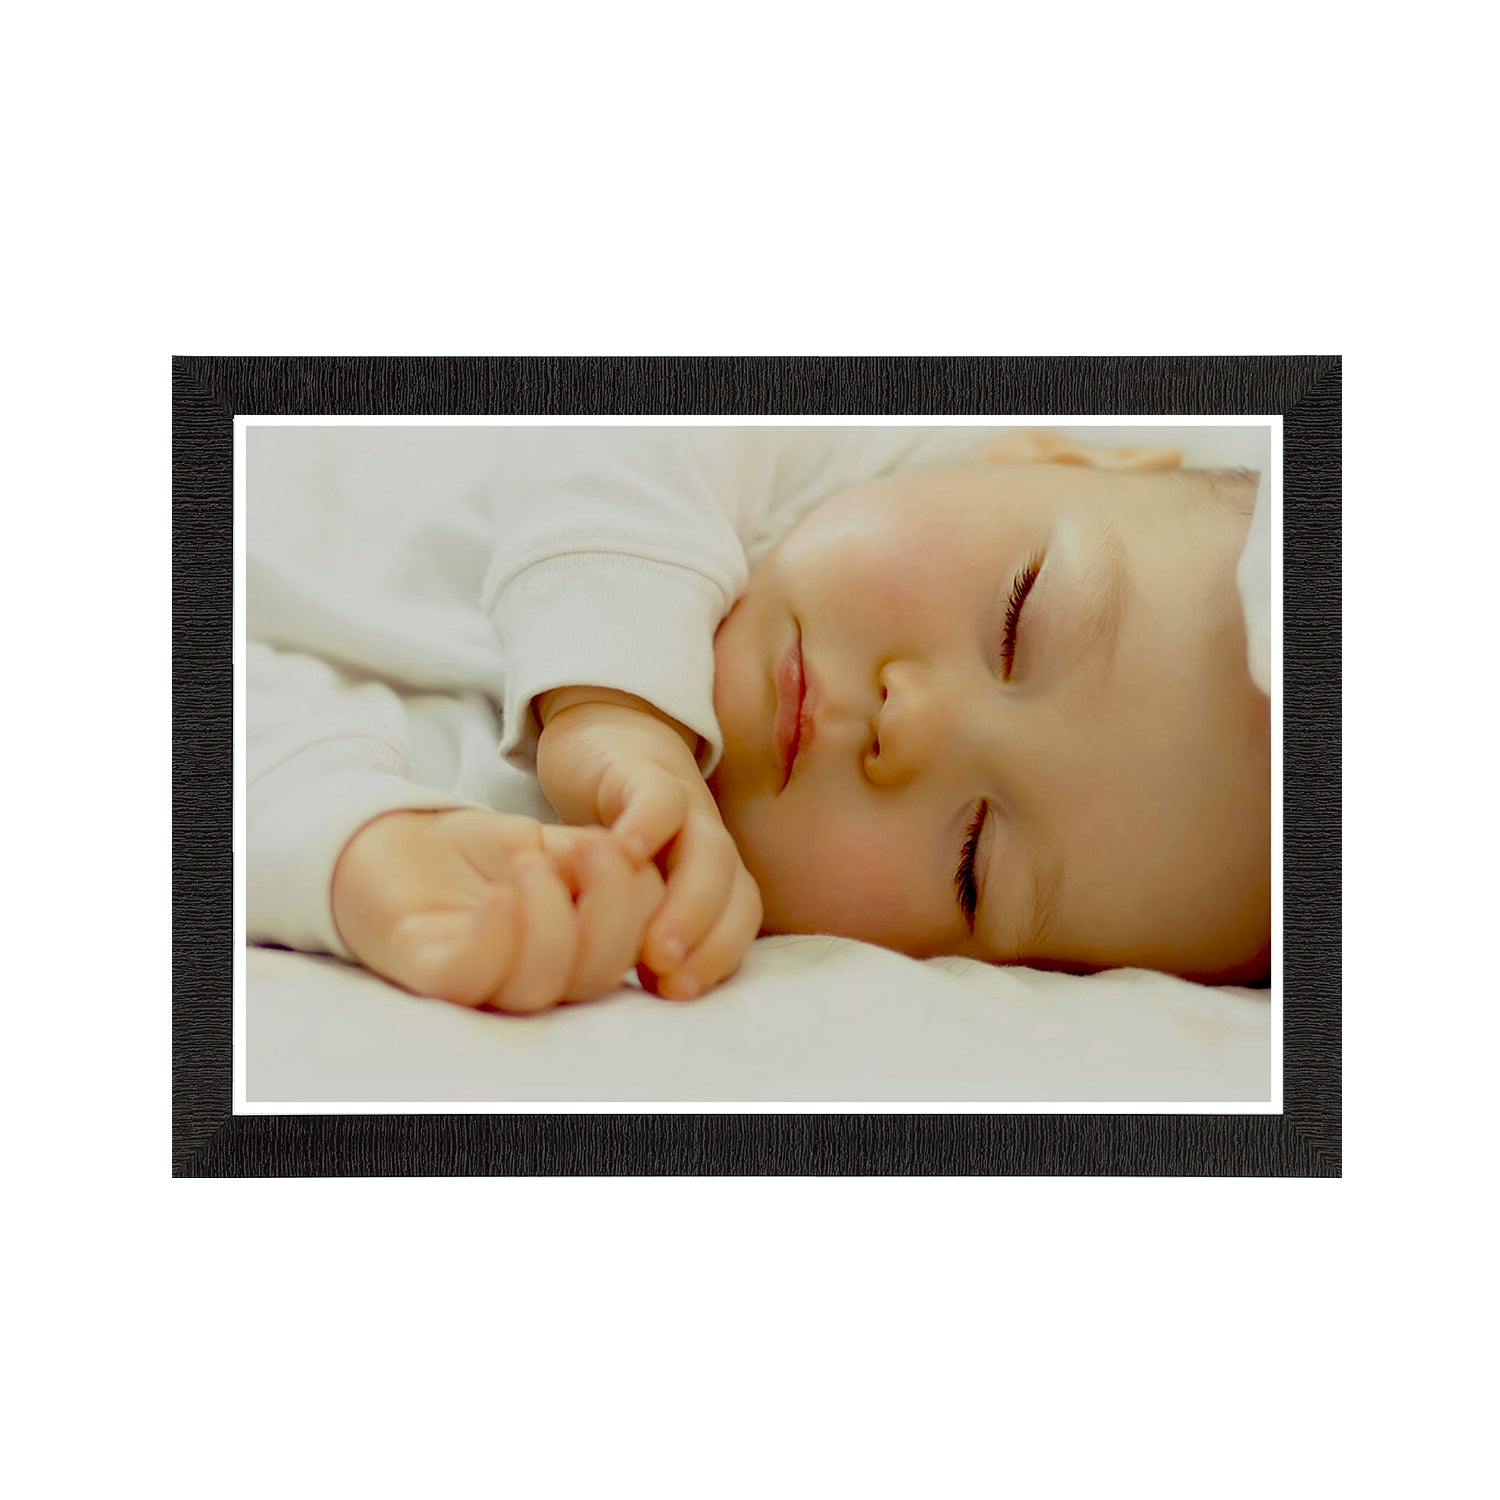 Cute Sleeping Baby Painting Digital Printed Wall Art